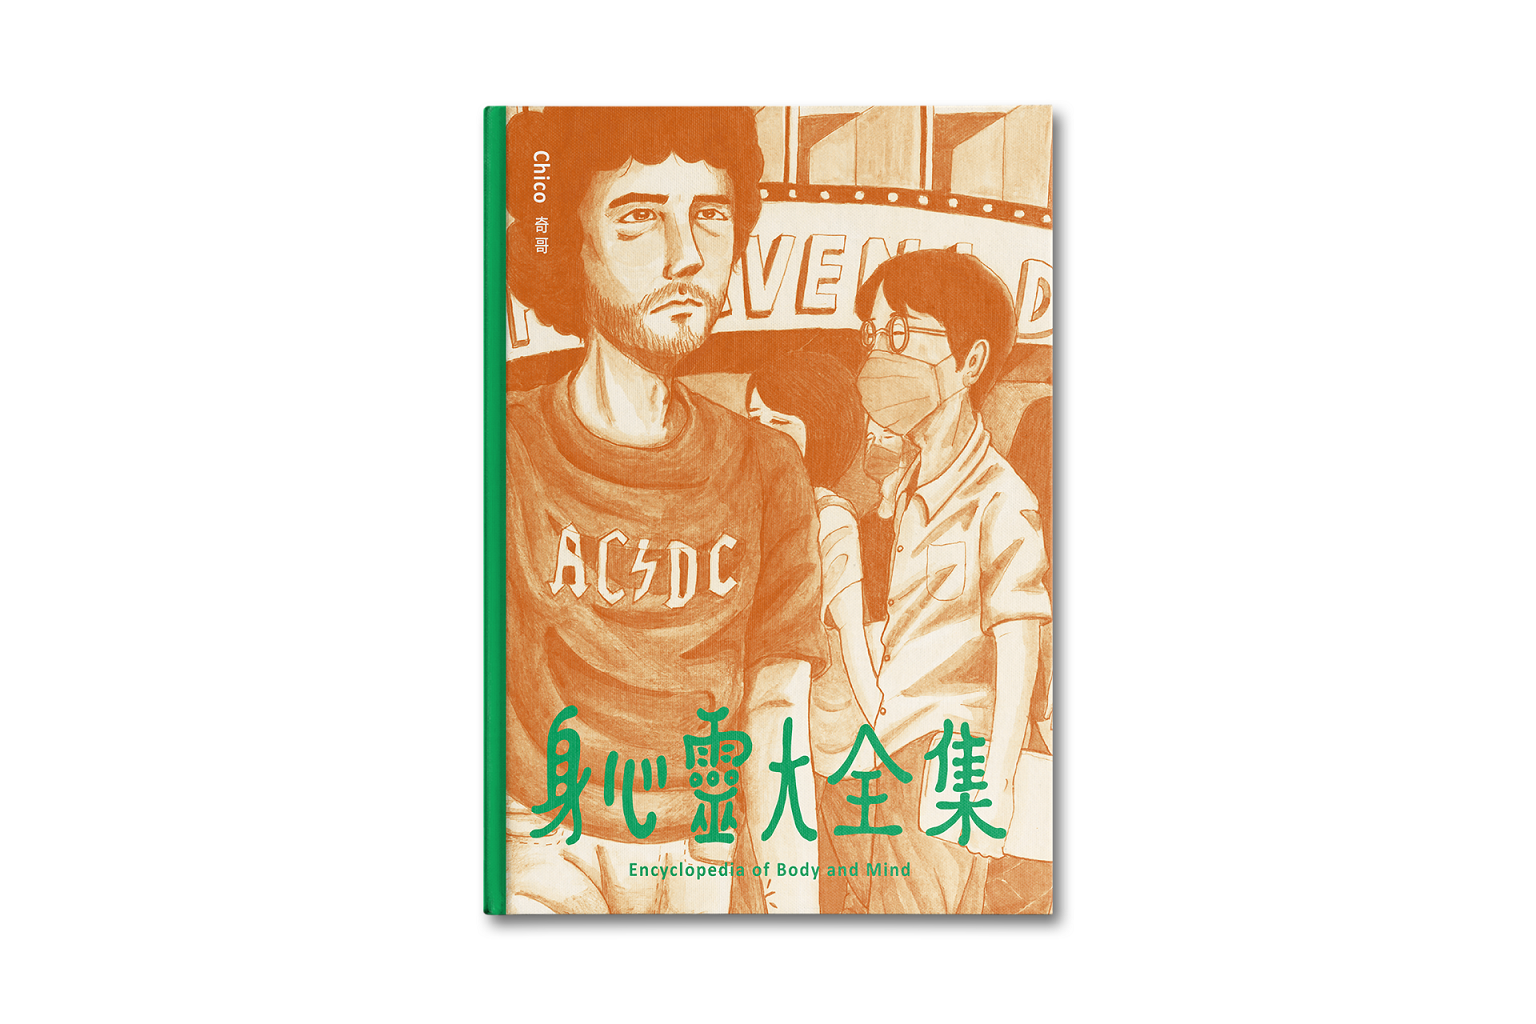 音樂人奇哥短篇漫畫集《身心靈大全集》7 月 4 日上市